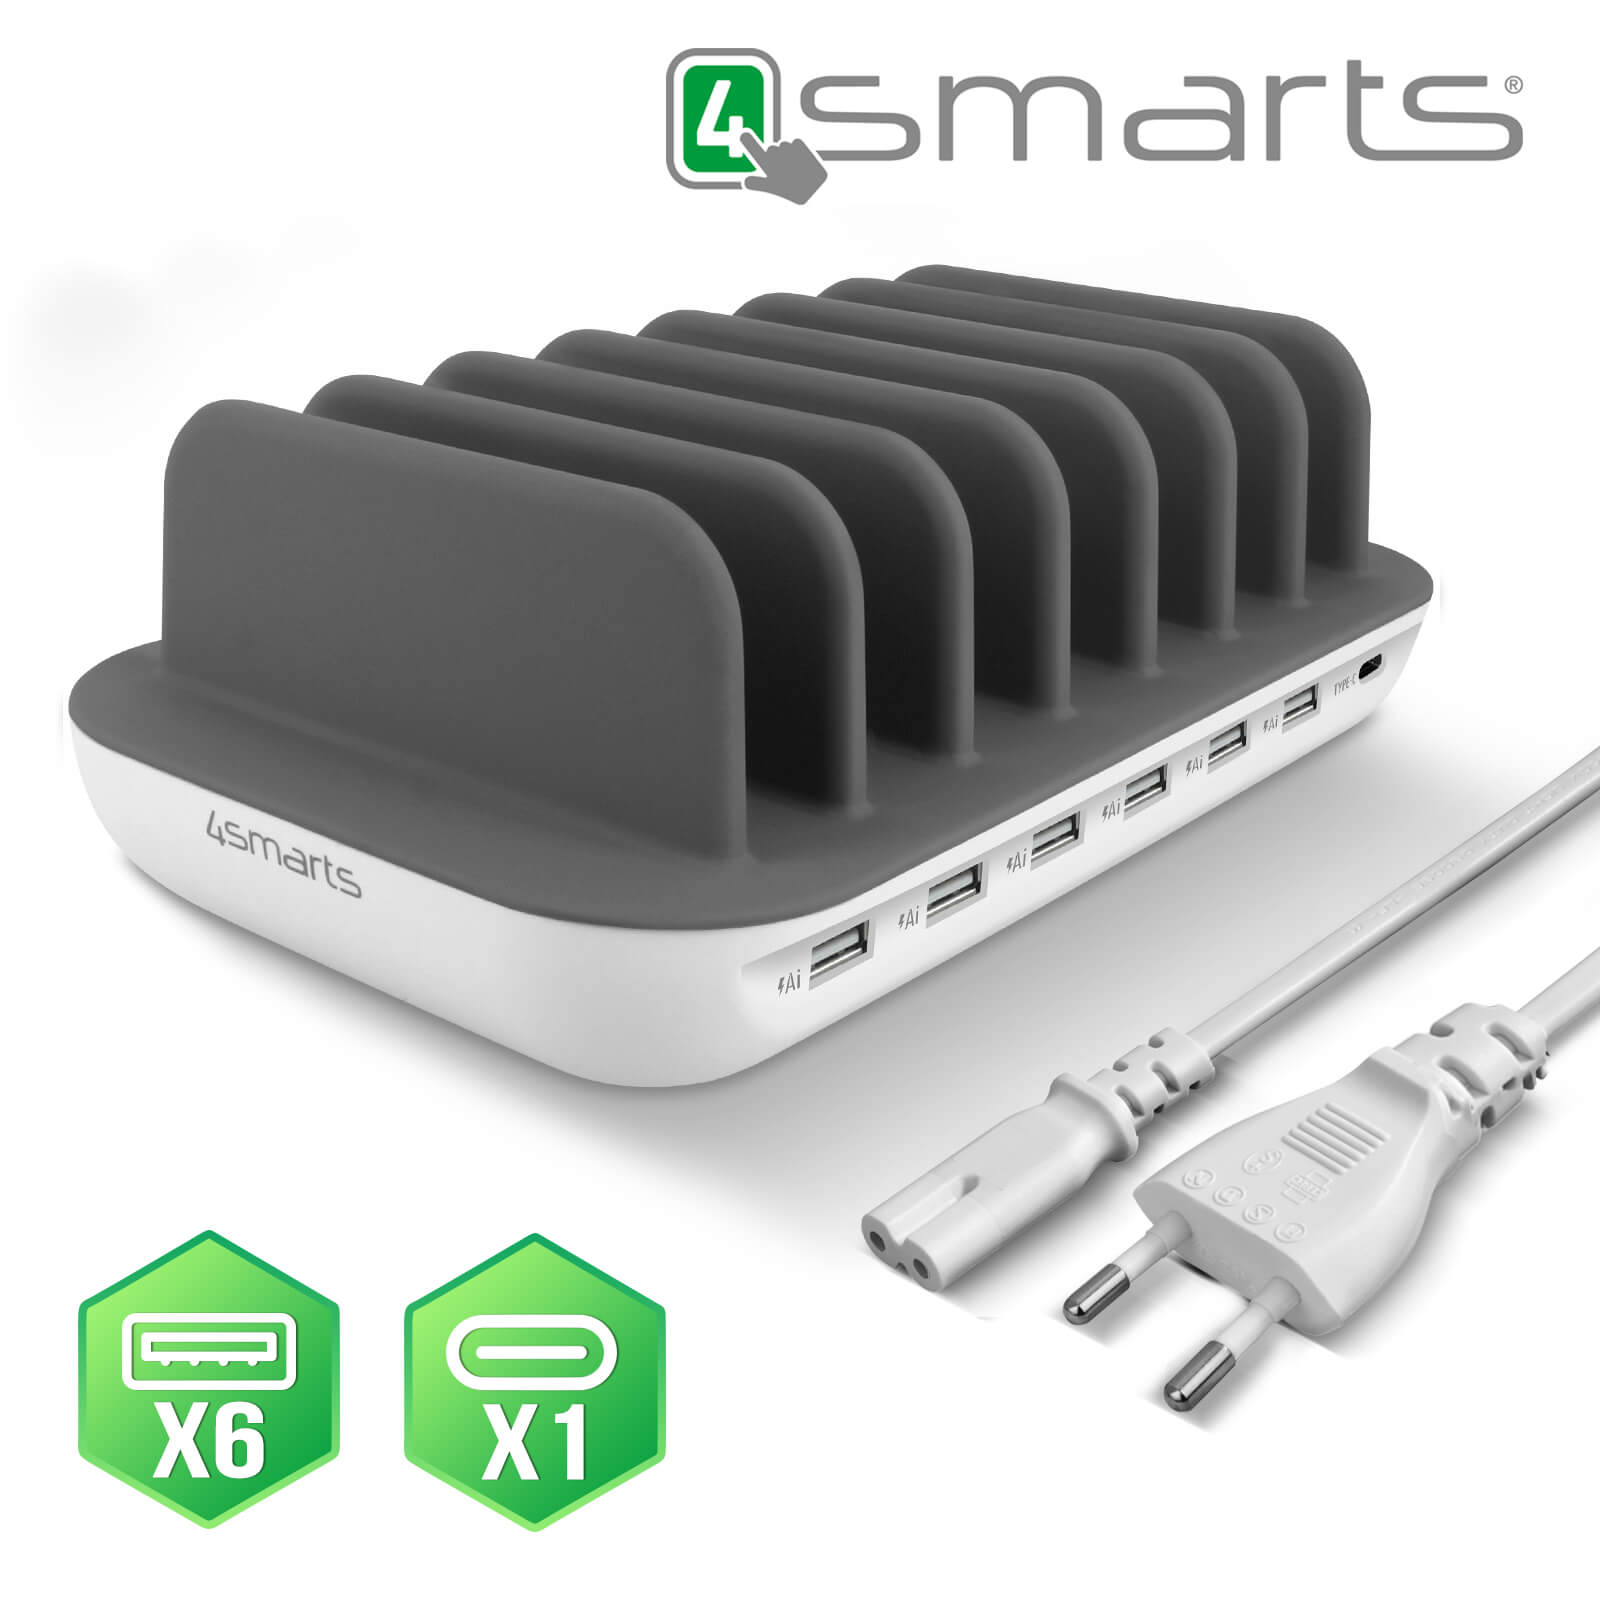 Base de carga multidispositivo 6 puertos USB y 1 puerto USB tipo C